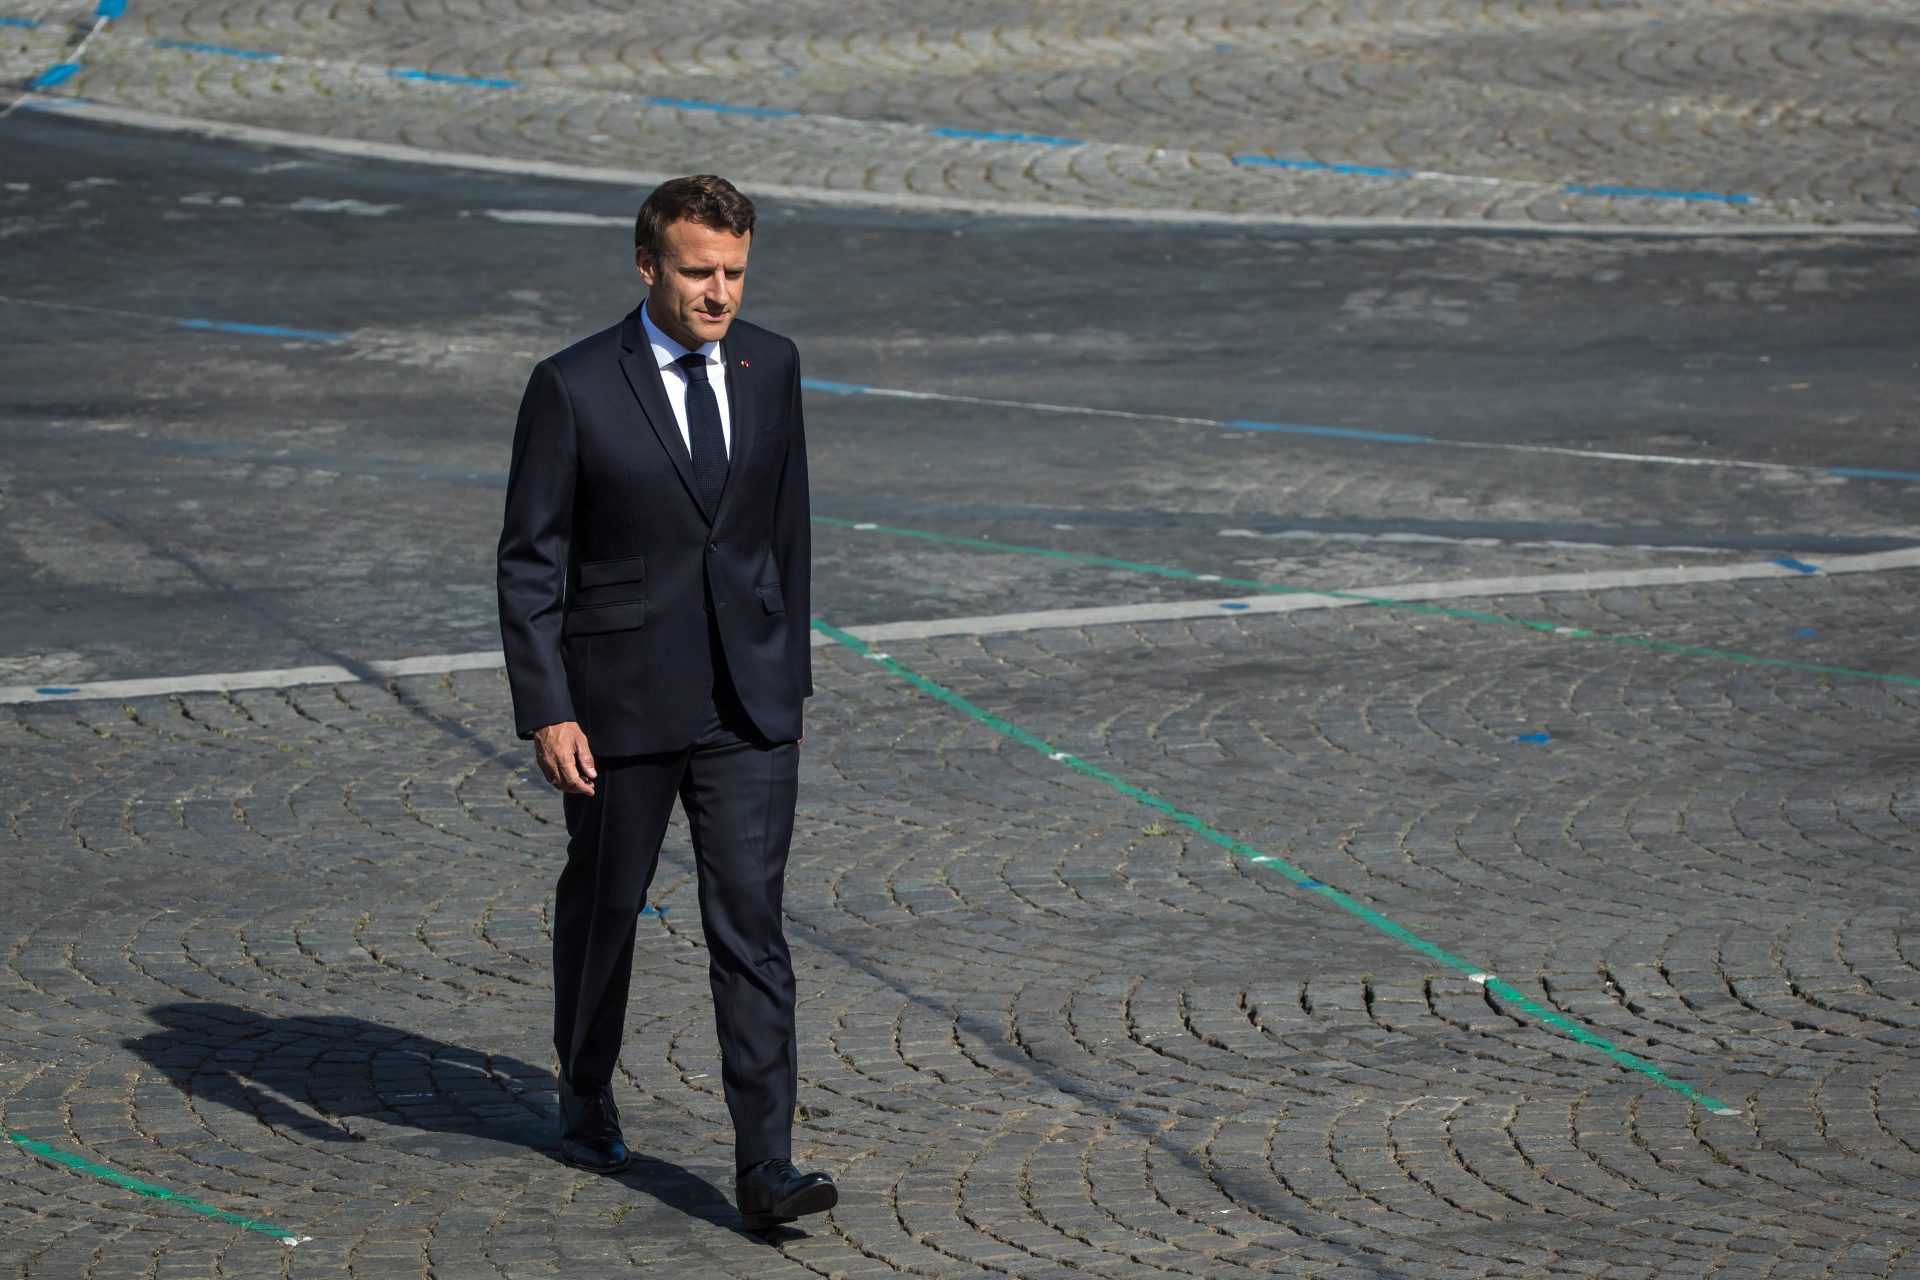 Visita de Macron considerada “motor para reiniciar” relaciones China-Francia